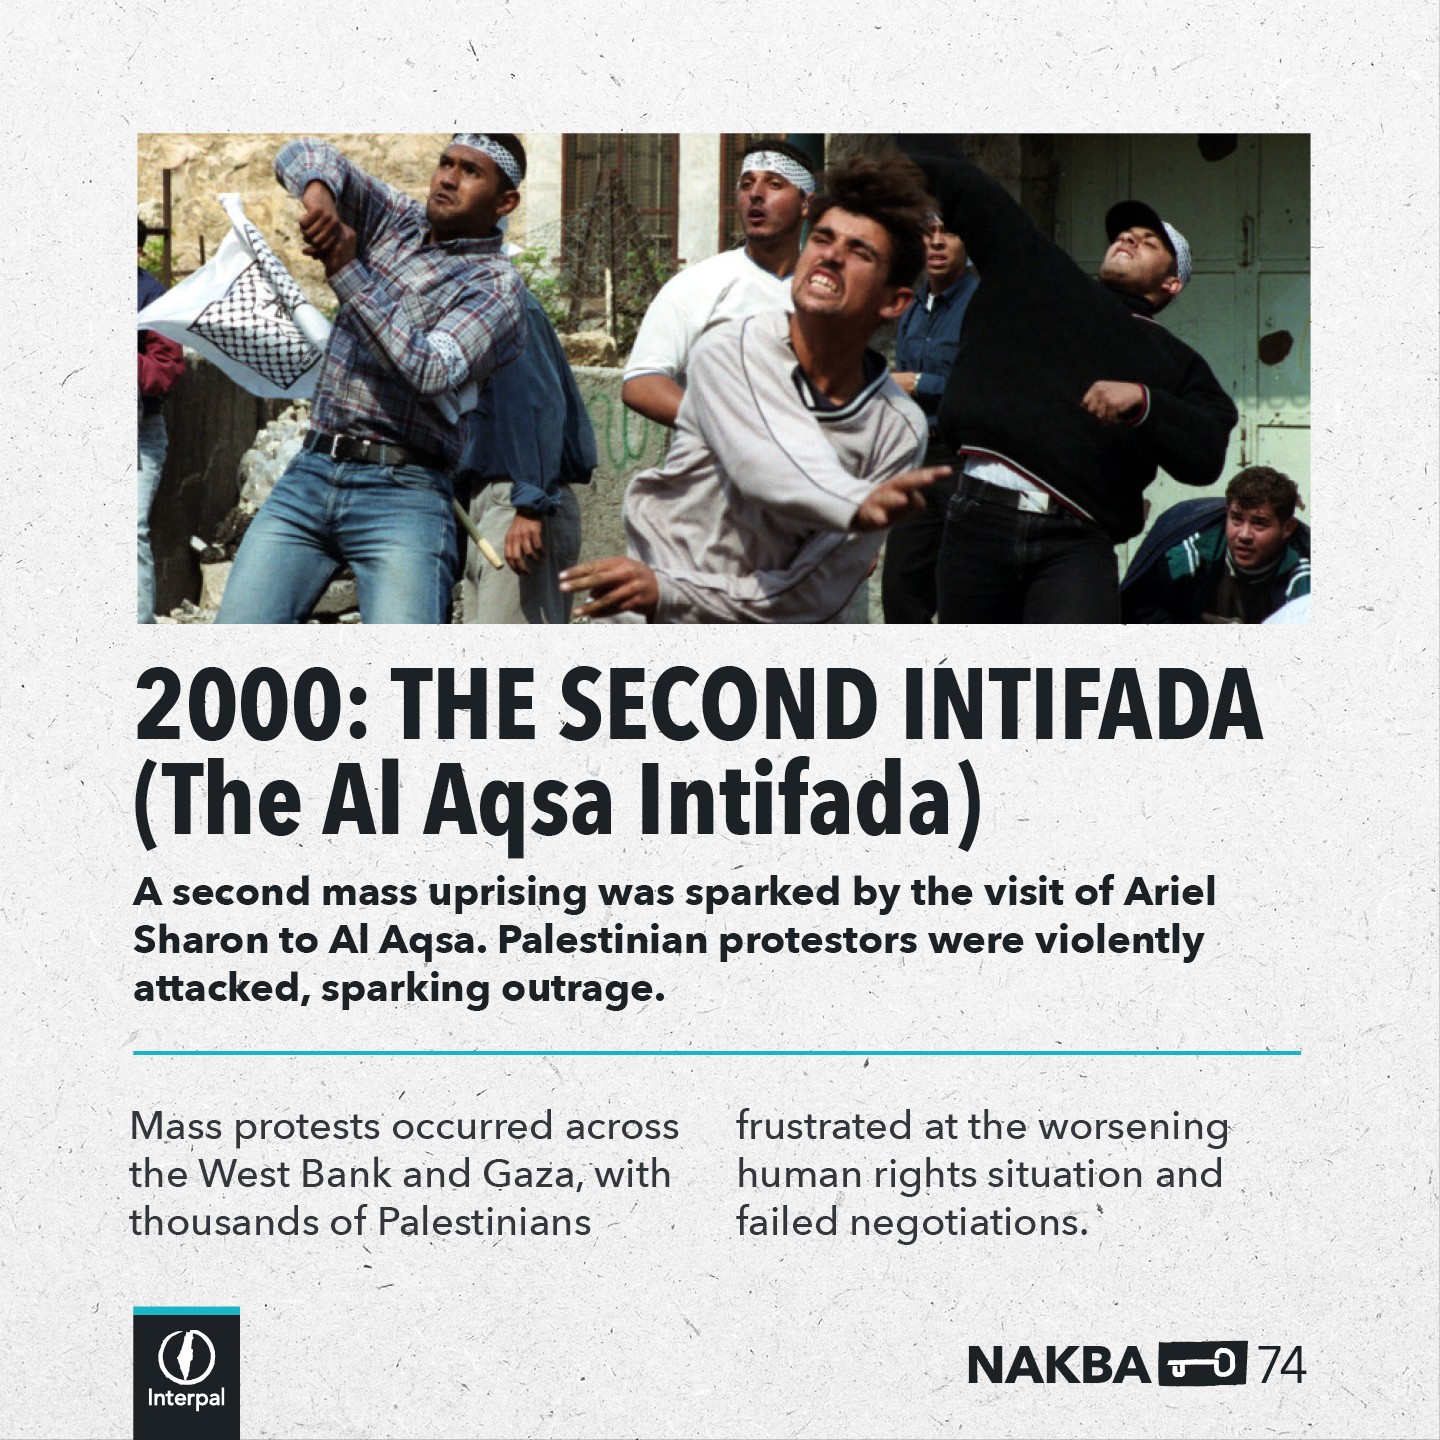 Interpal Nakba 74 Timeline 2000 A